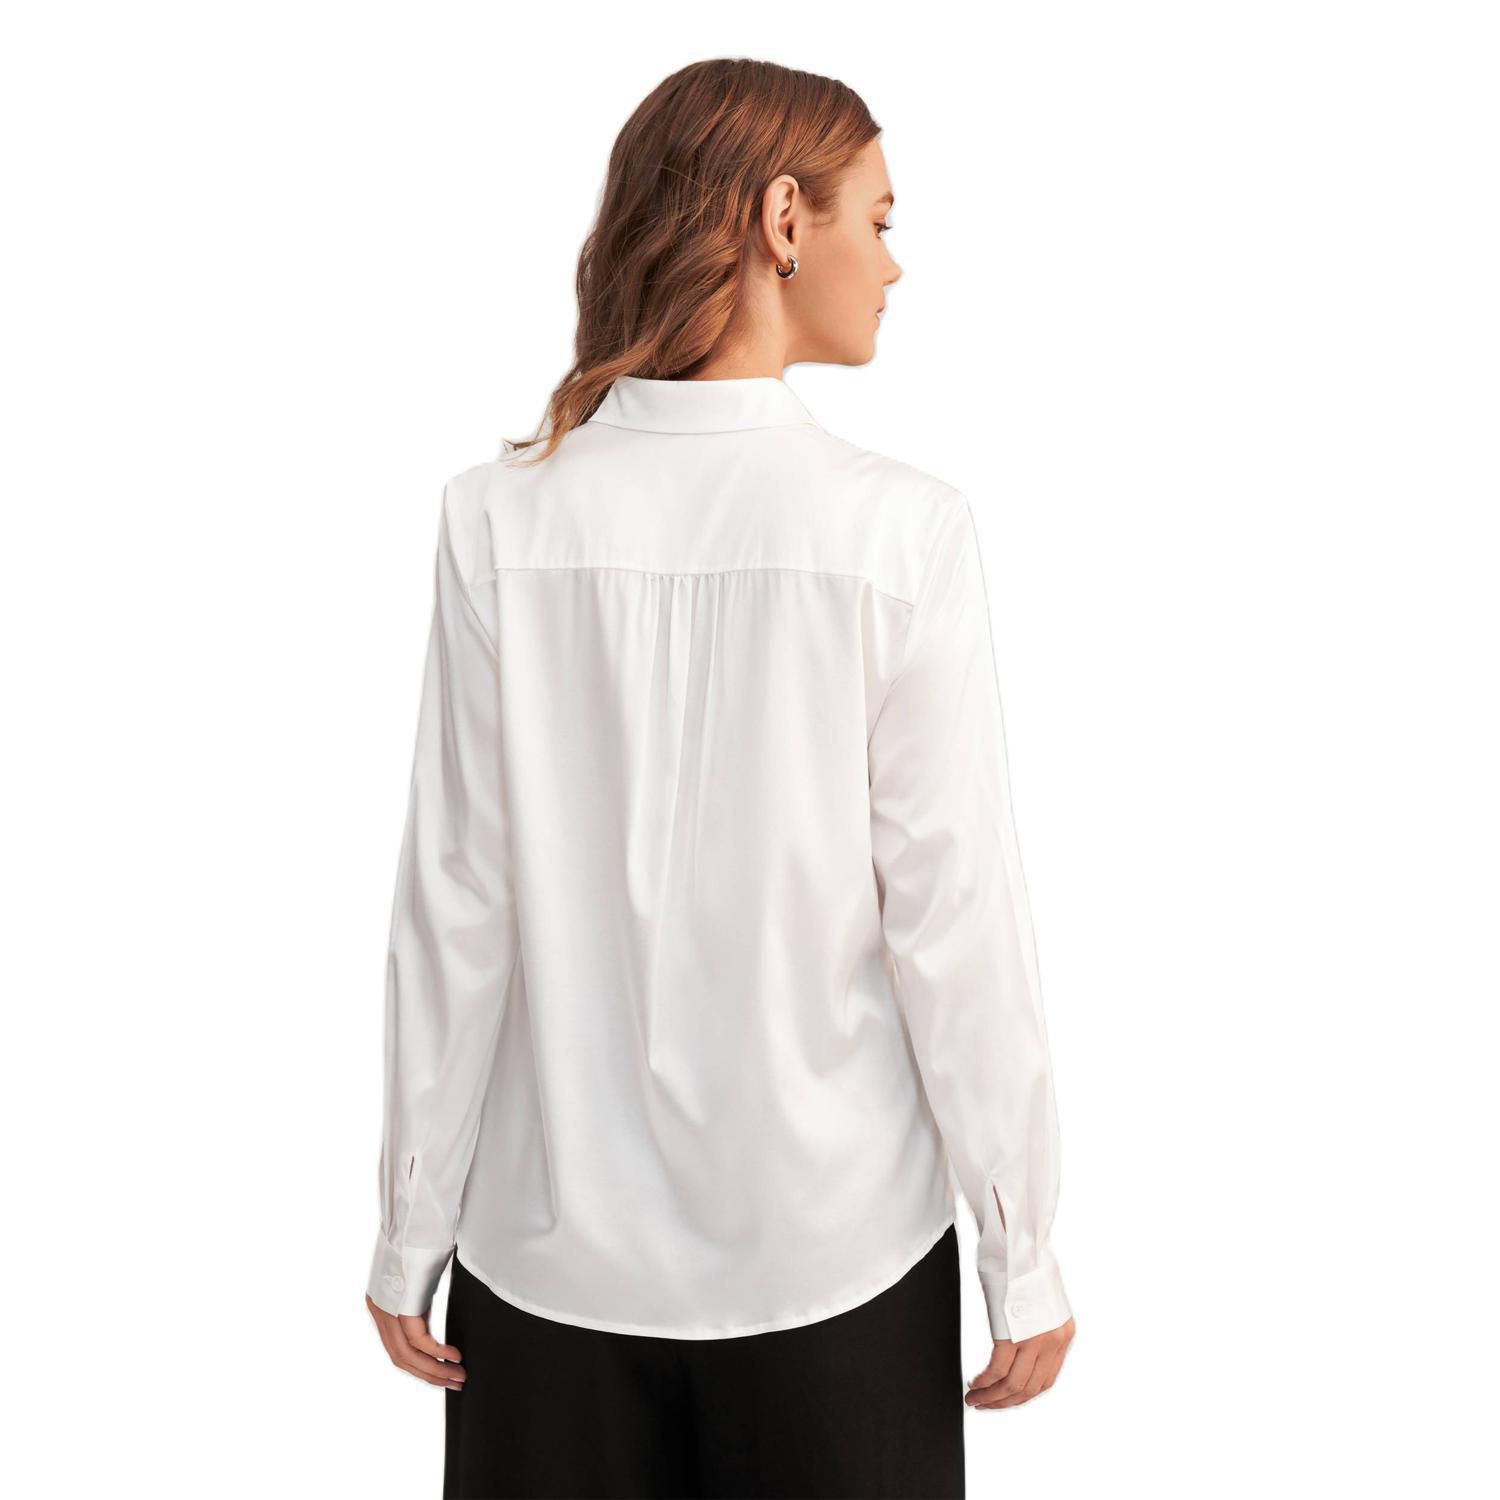 LILYSILK Женская шелковая блузка с длинными рукавами и воротником Lilysilk